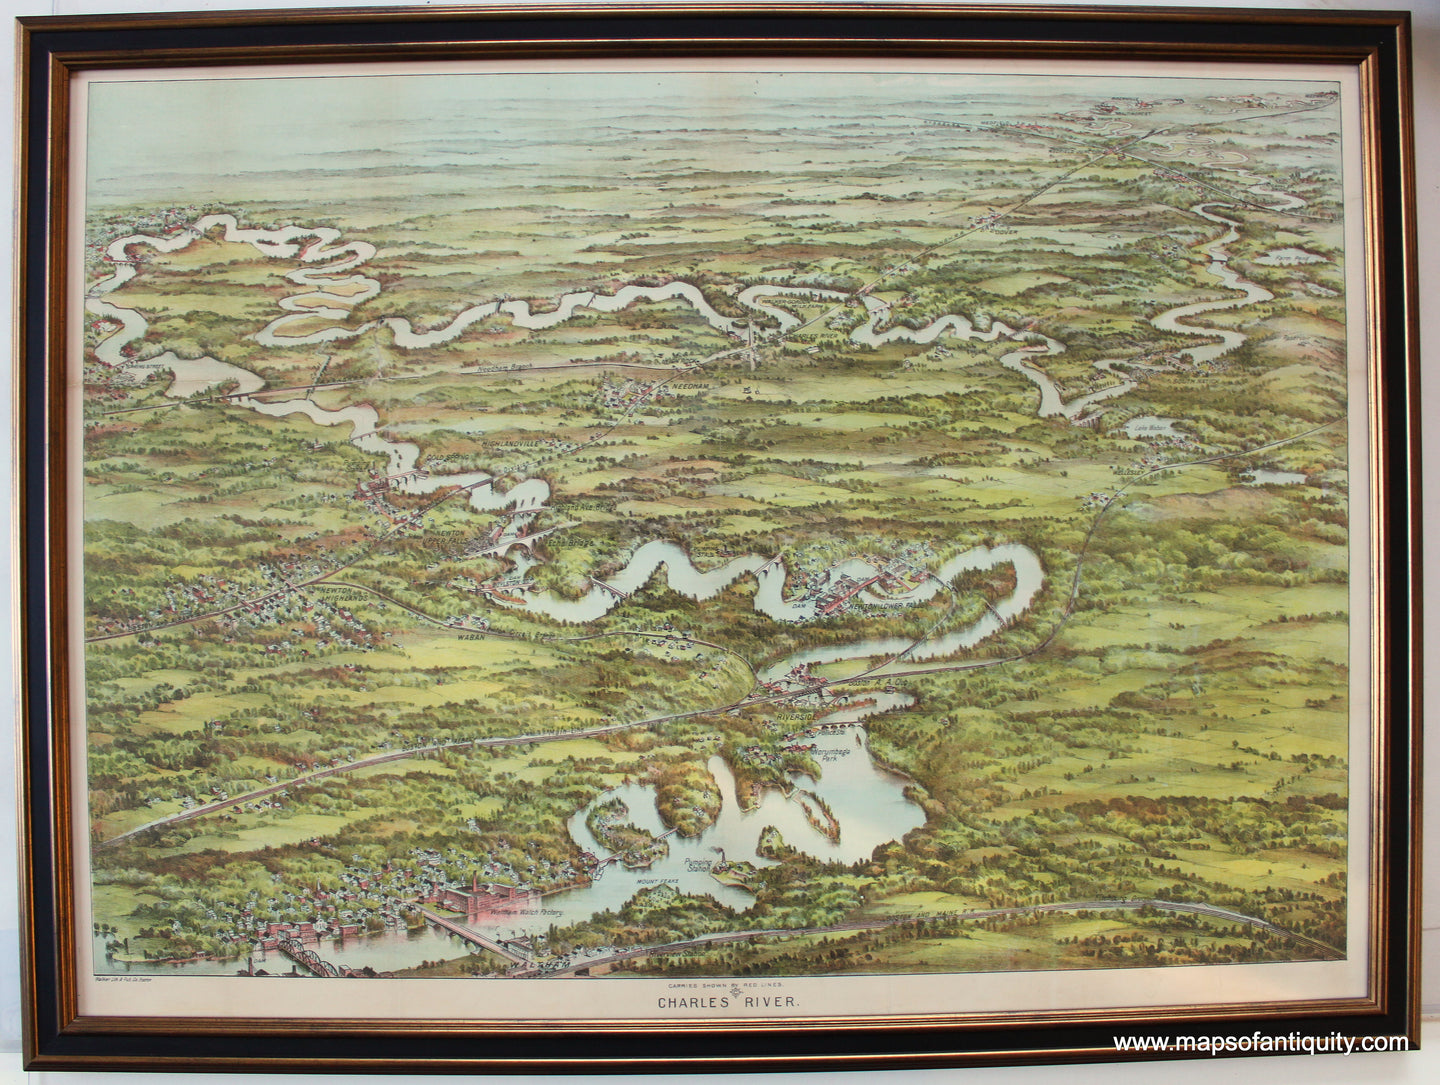 Charles-River-Bird's-Eye-View-Canoeing-Map-Framed